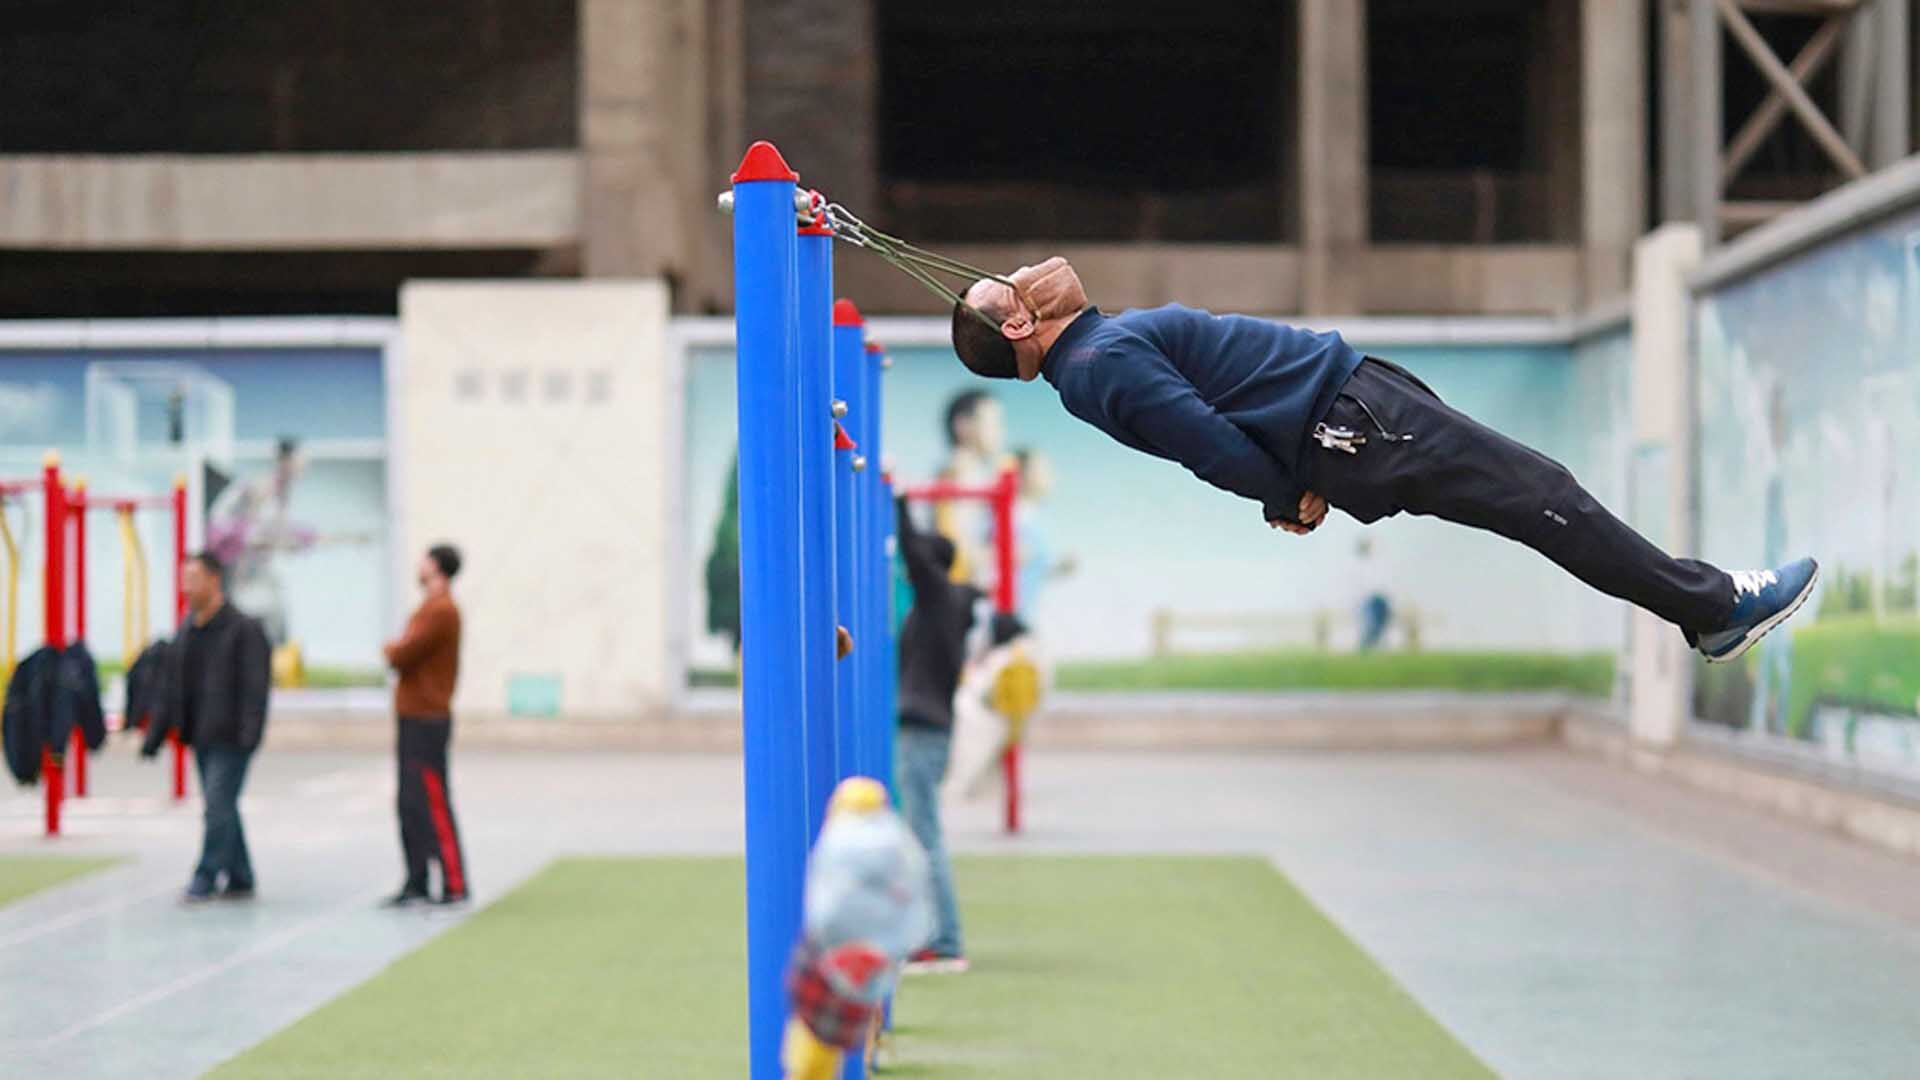 ชายจีนดับคาอุปกรณ์ออกกำลังกาย “เชือกพยุงคาง” ผู้เชี่ยวชาญเตือนอย่าหาทำ